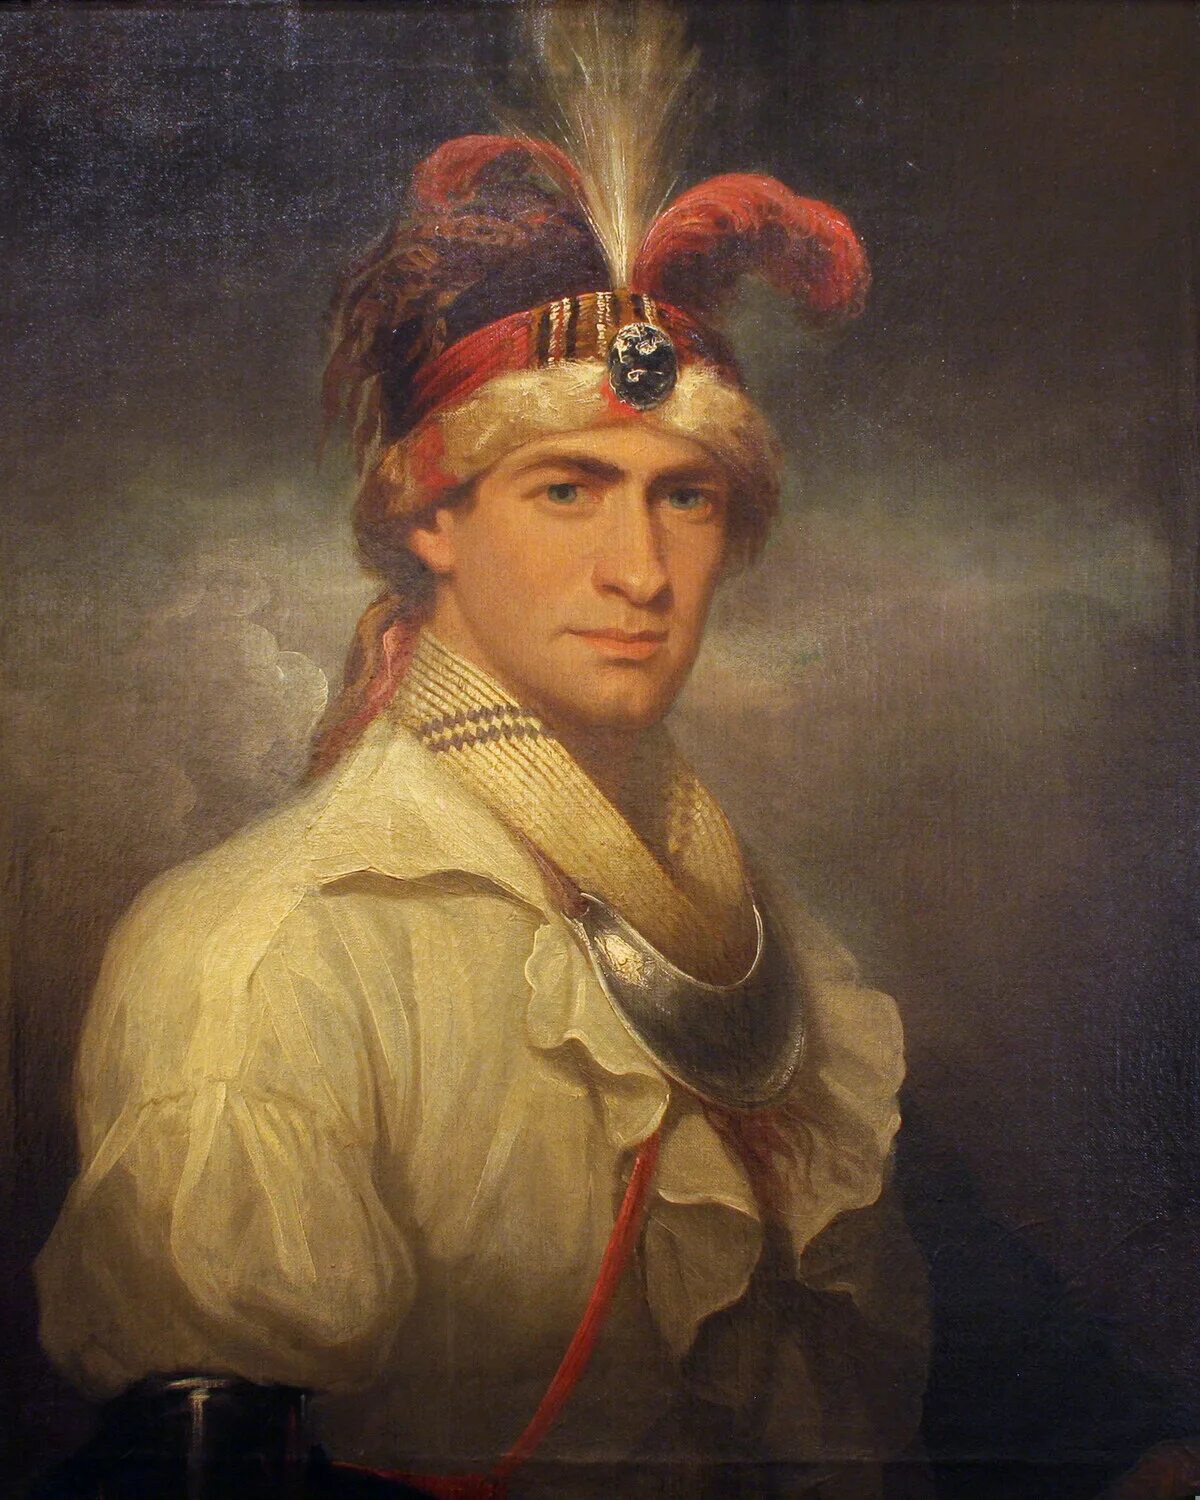 Мальчики 18 века. Уильям август Боулз. Уильям август Боулз 1763-1805. Артура Этерли портрет.